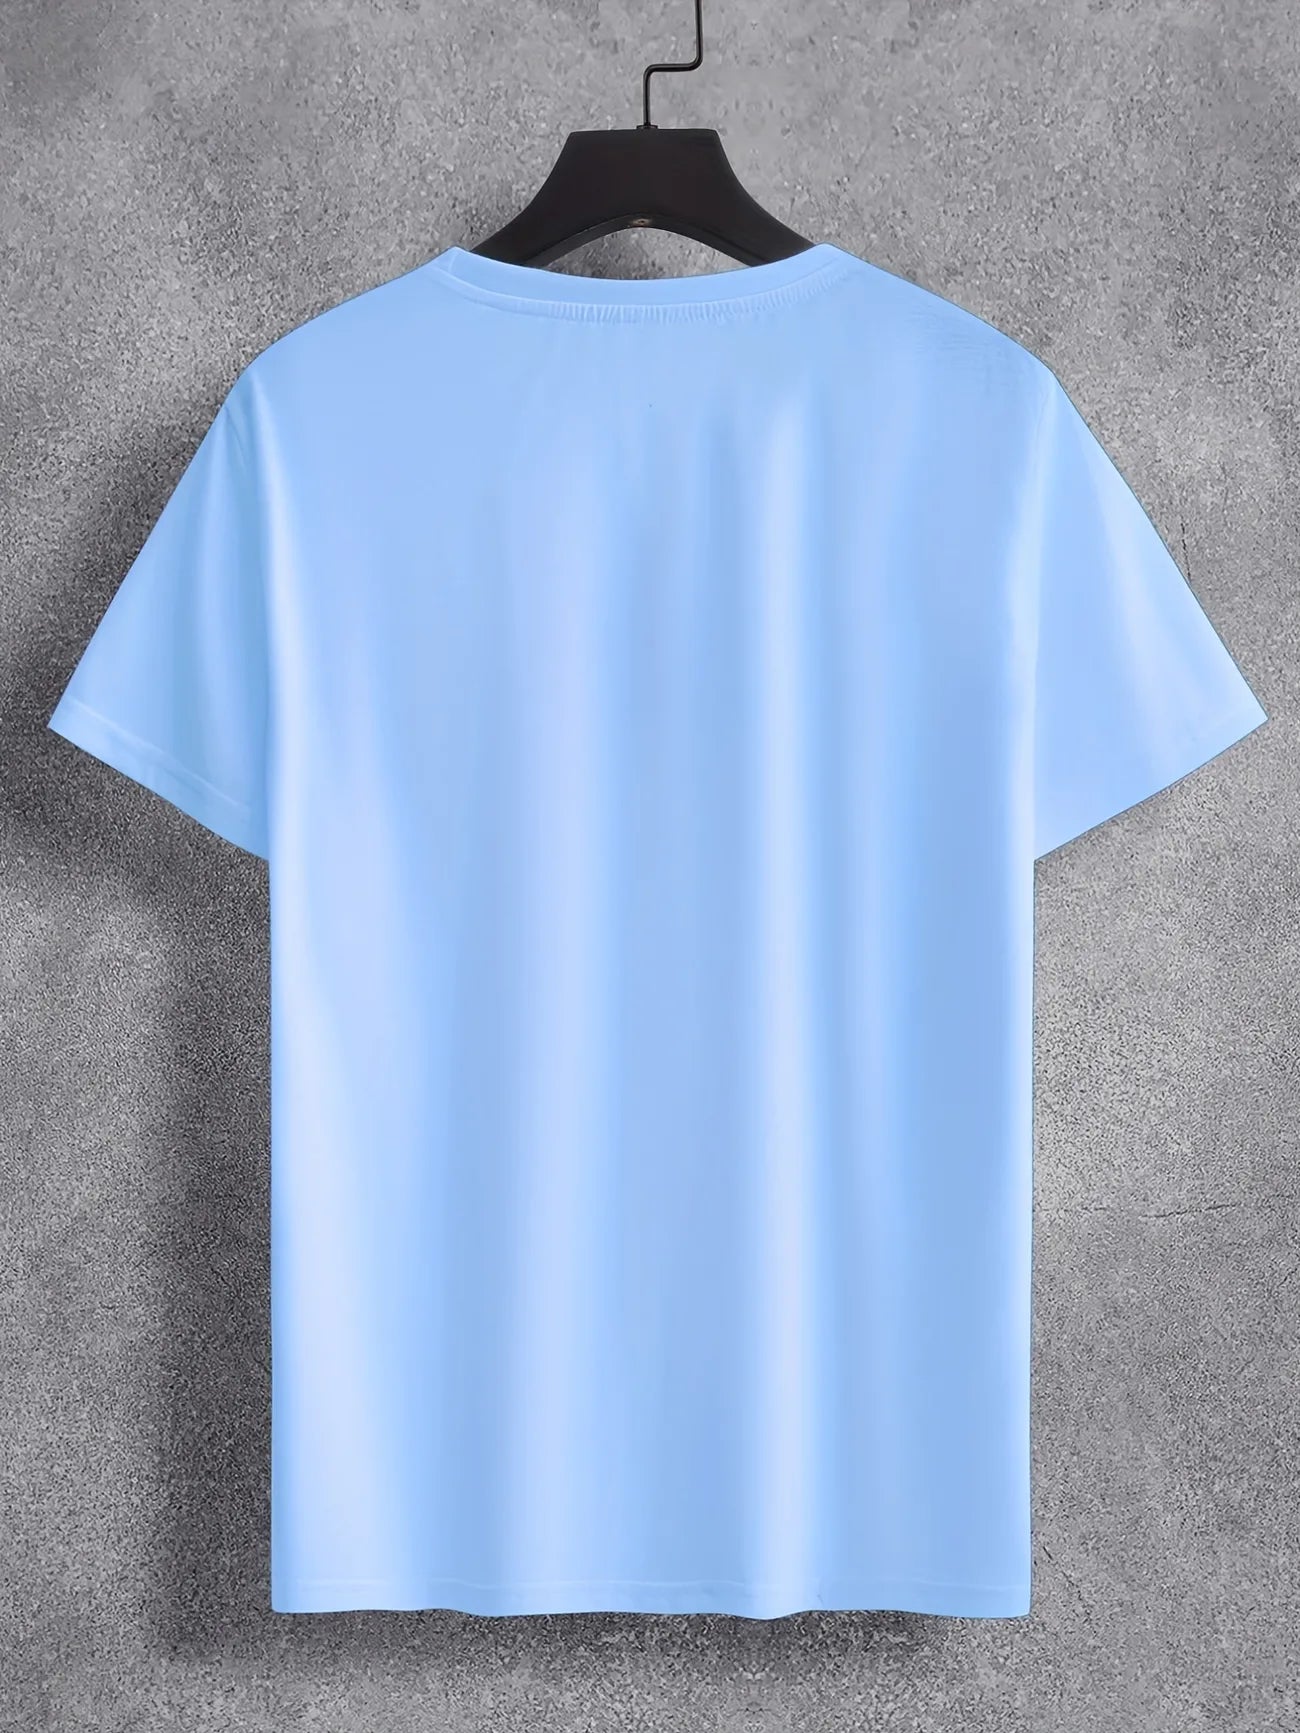 Mens Cotton Sticker Printed T-Shirt TTMPS91 - Light Blue